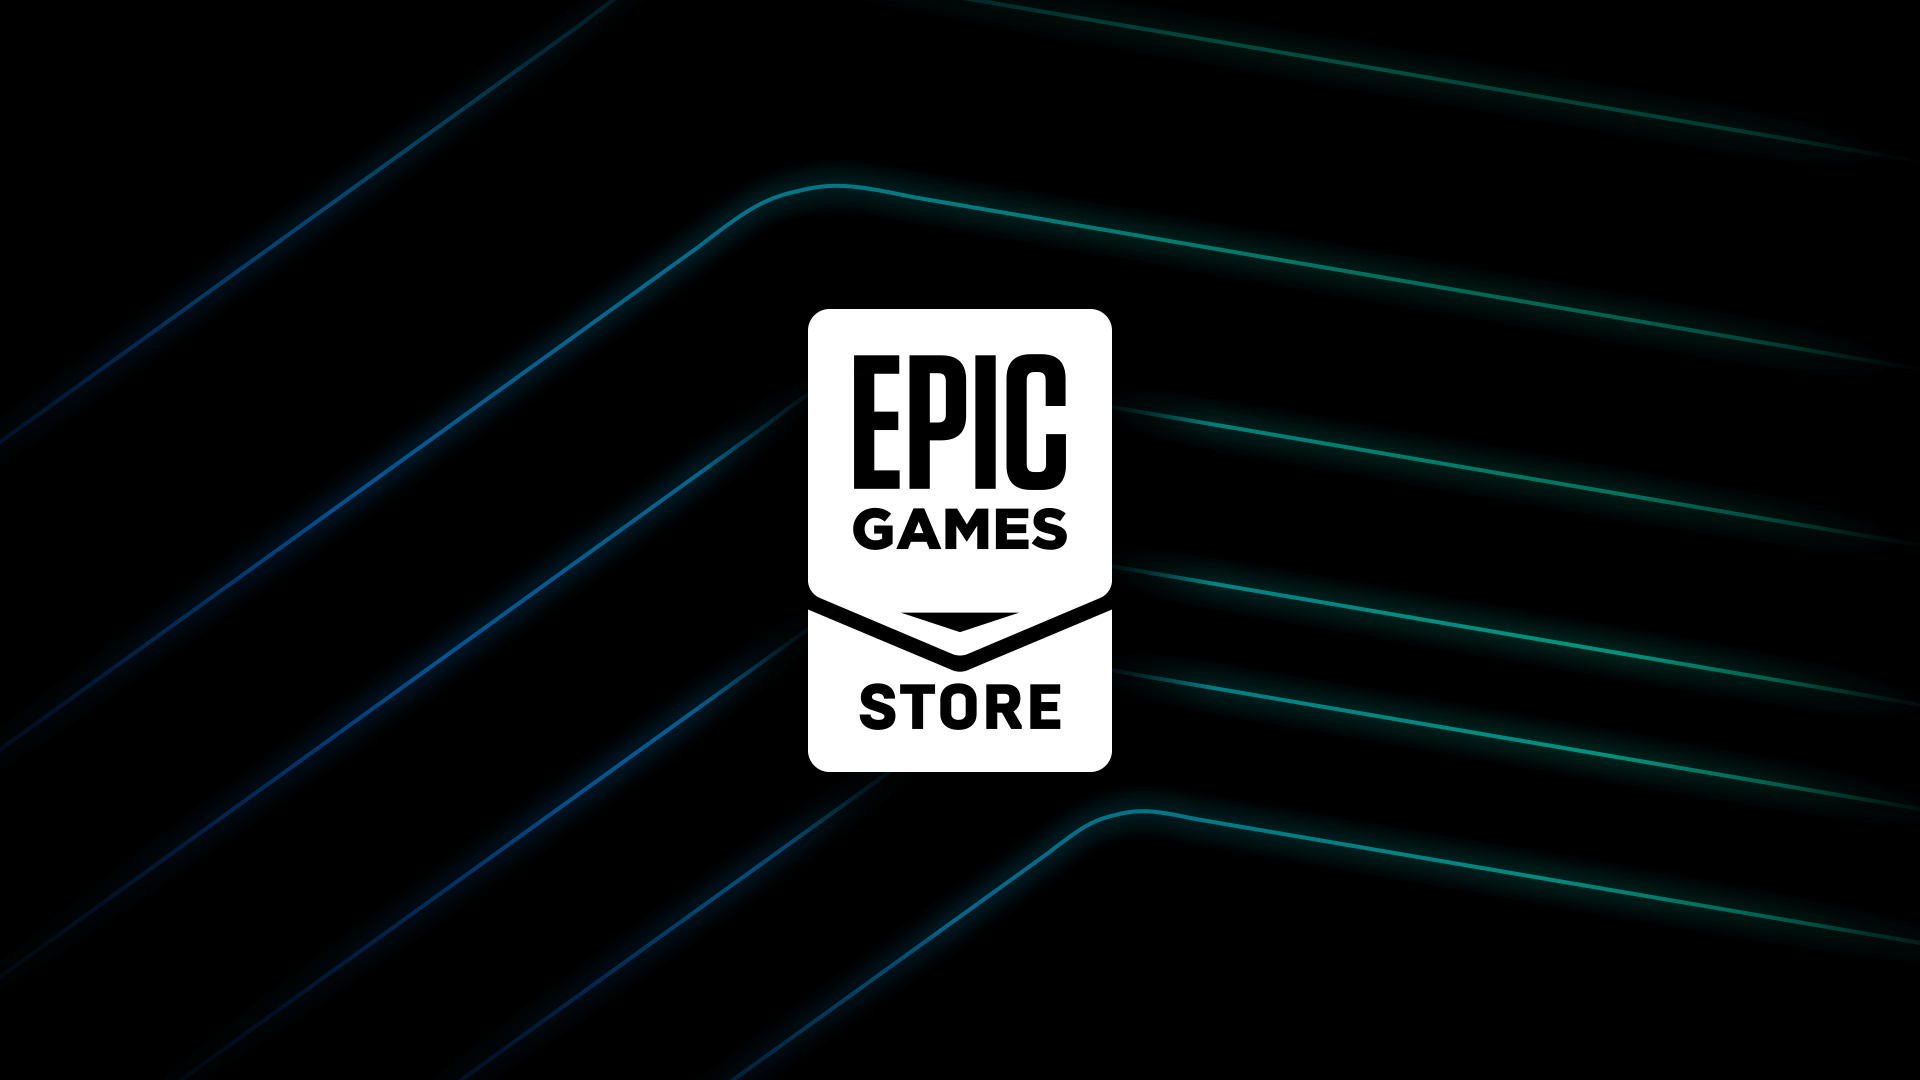 Incluso cinco años después de su lanzamiento, la Epic Games Store sigue sin ser rentable